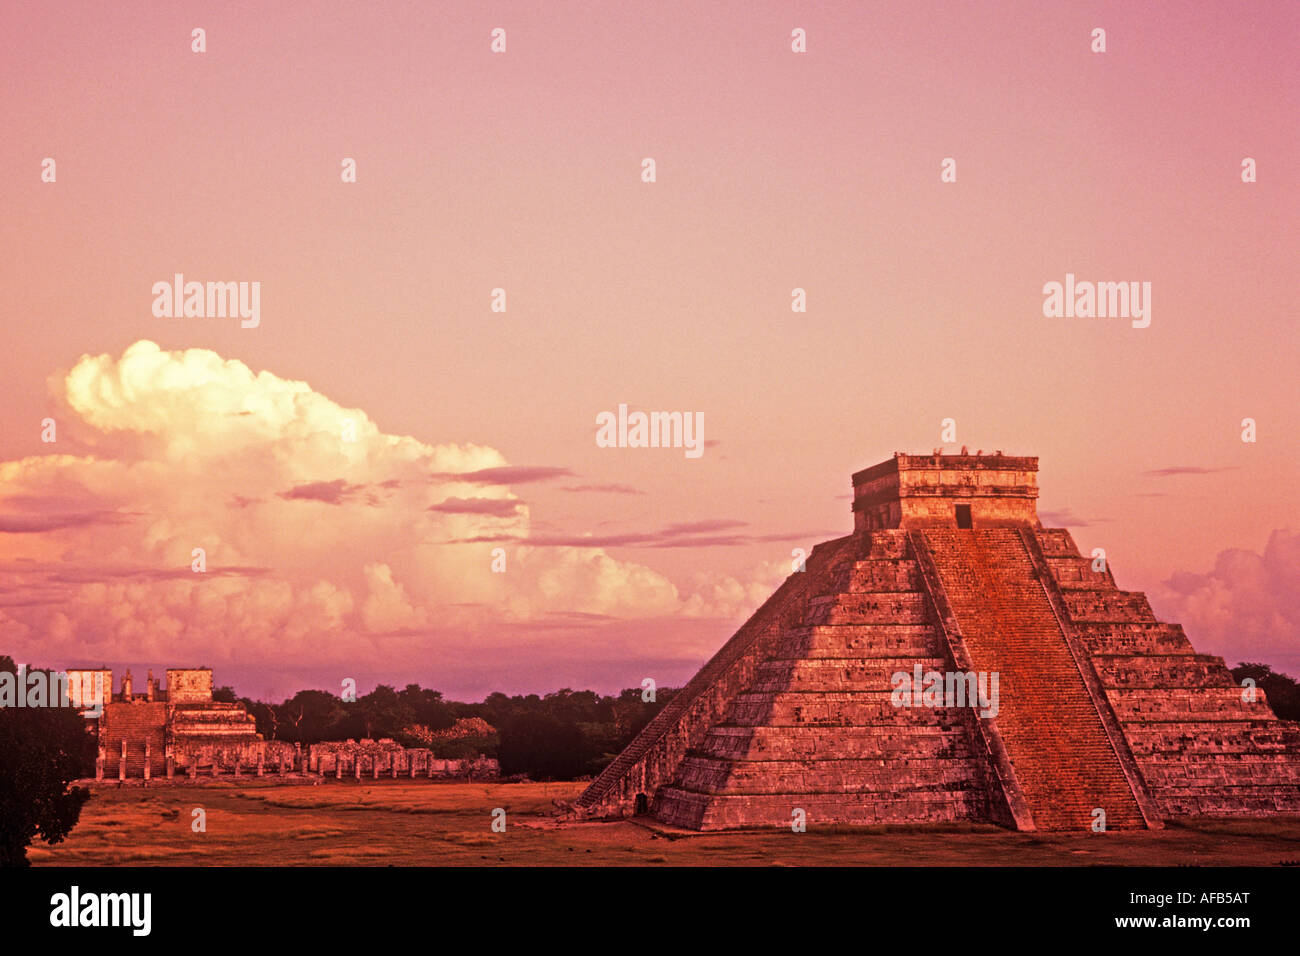 El Castillo Pyramide des ruines Indiennes mayas de Chichen Itza Yucatan Mexique Banque D'Images